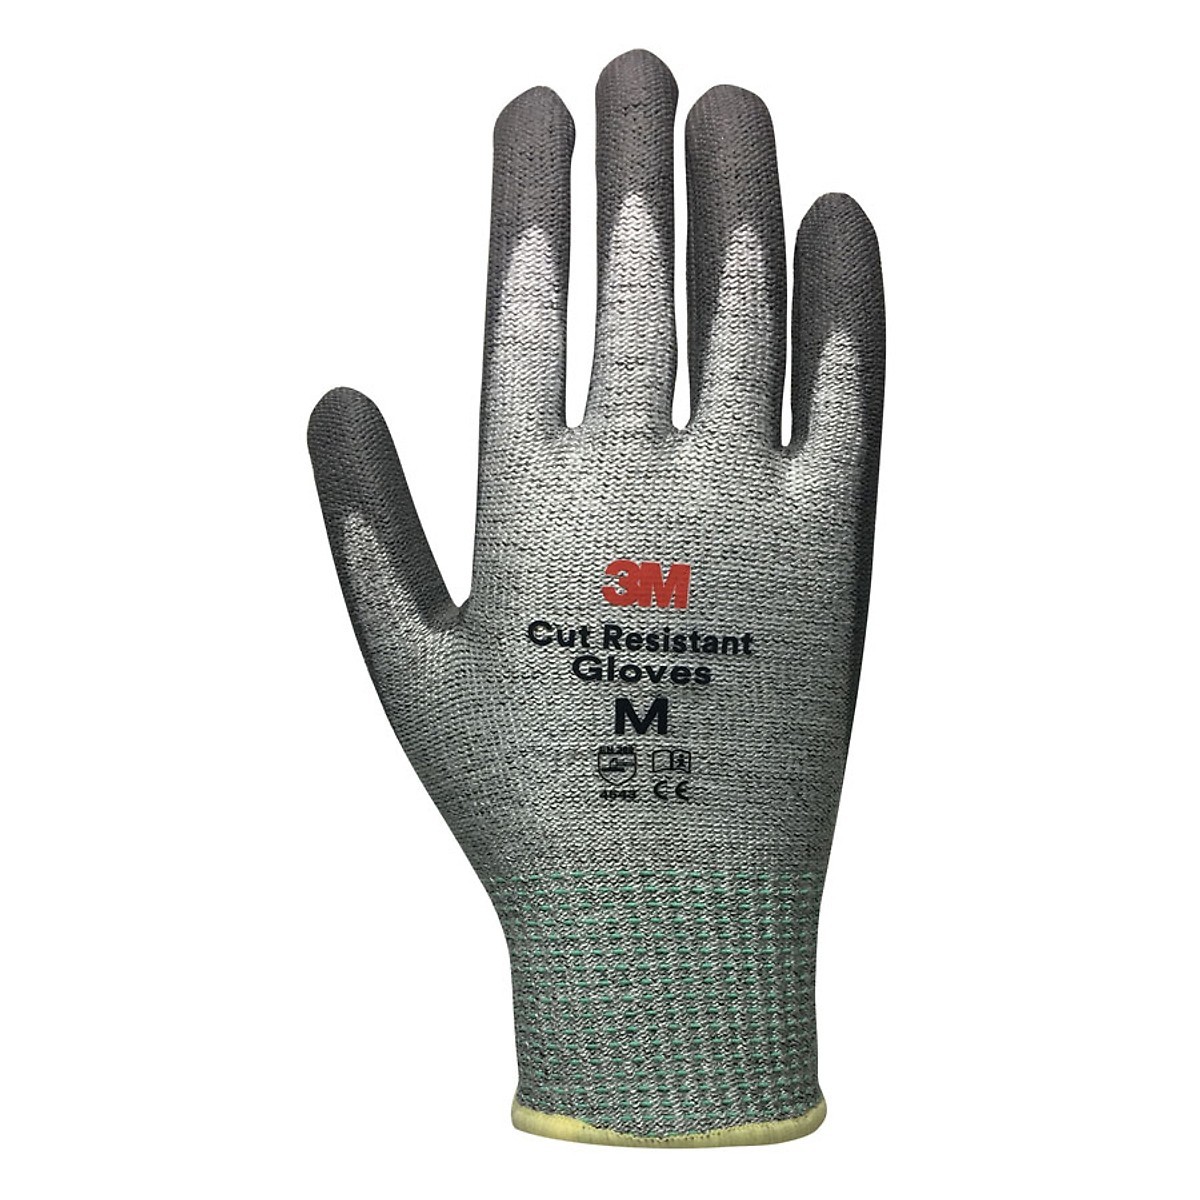 3M Cut Resistant Gloves